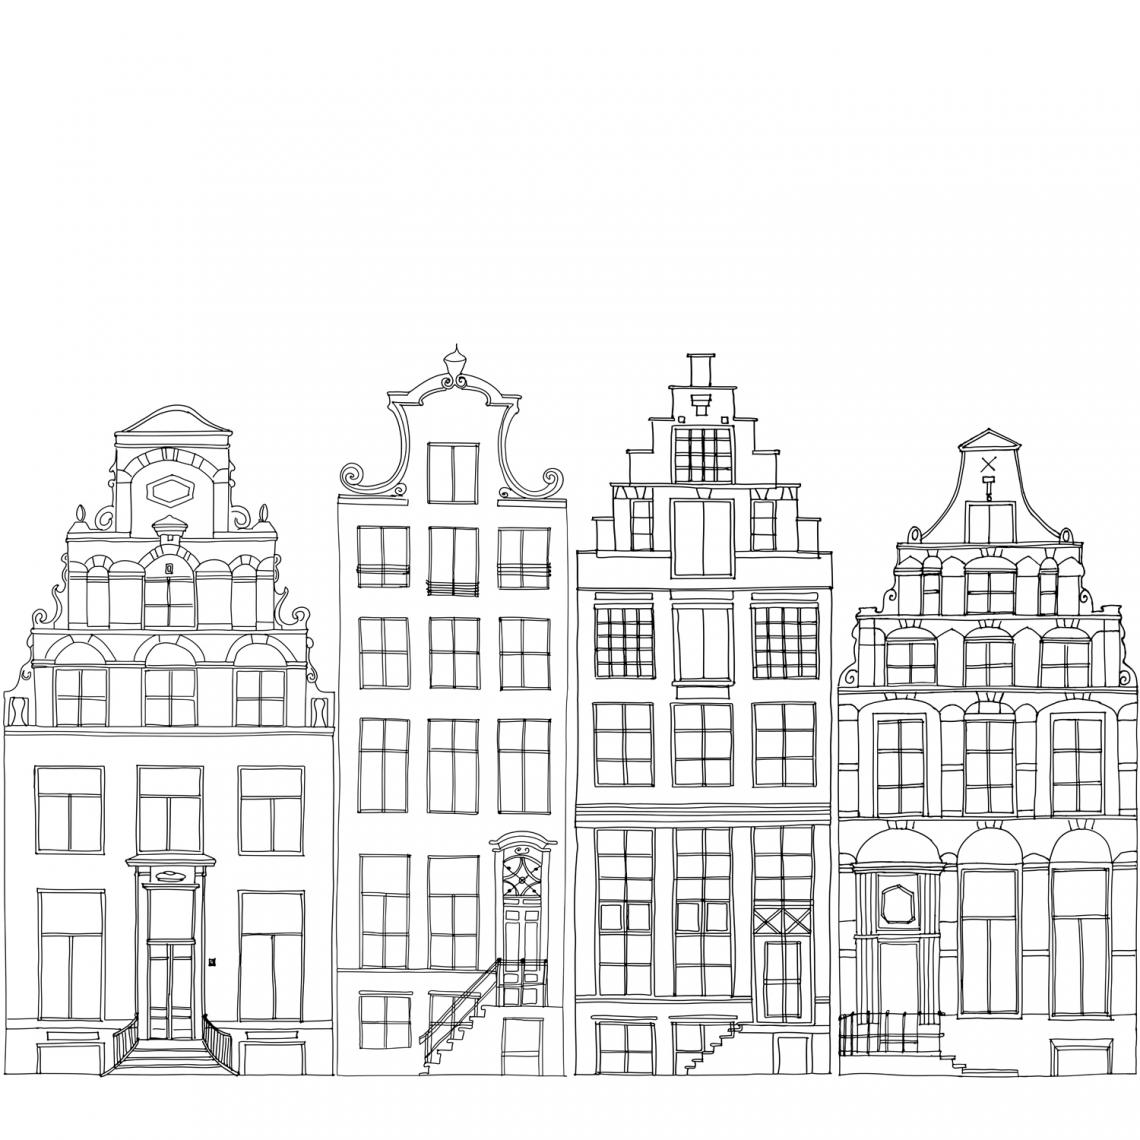 ESTAhome - ESTAhome papier peint panoramique maisons bordant les canaux d'Amsterdam dessinées noir et blanc - 159103 - 2.79 m x 2.79 m - Papier peint